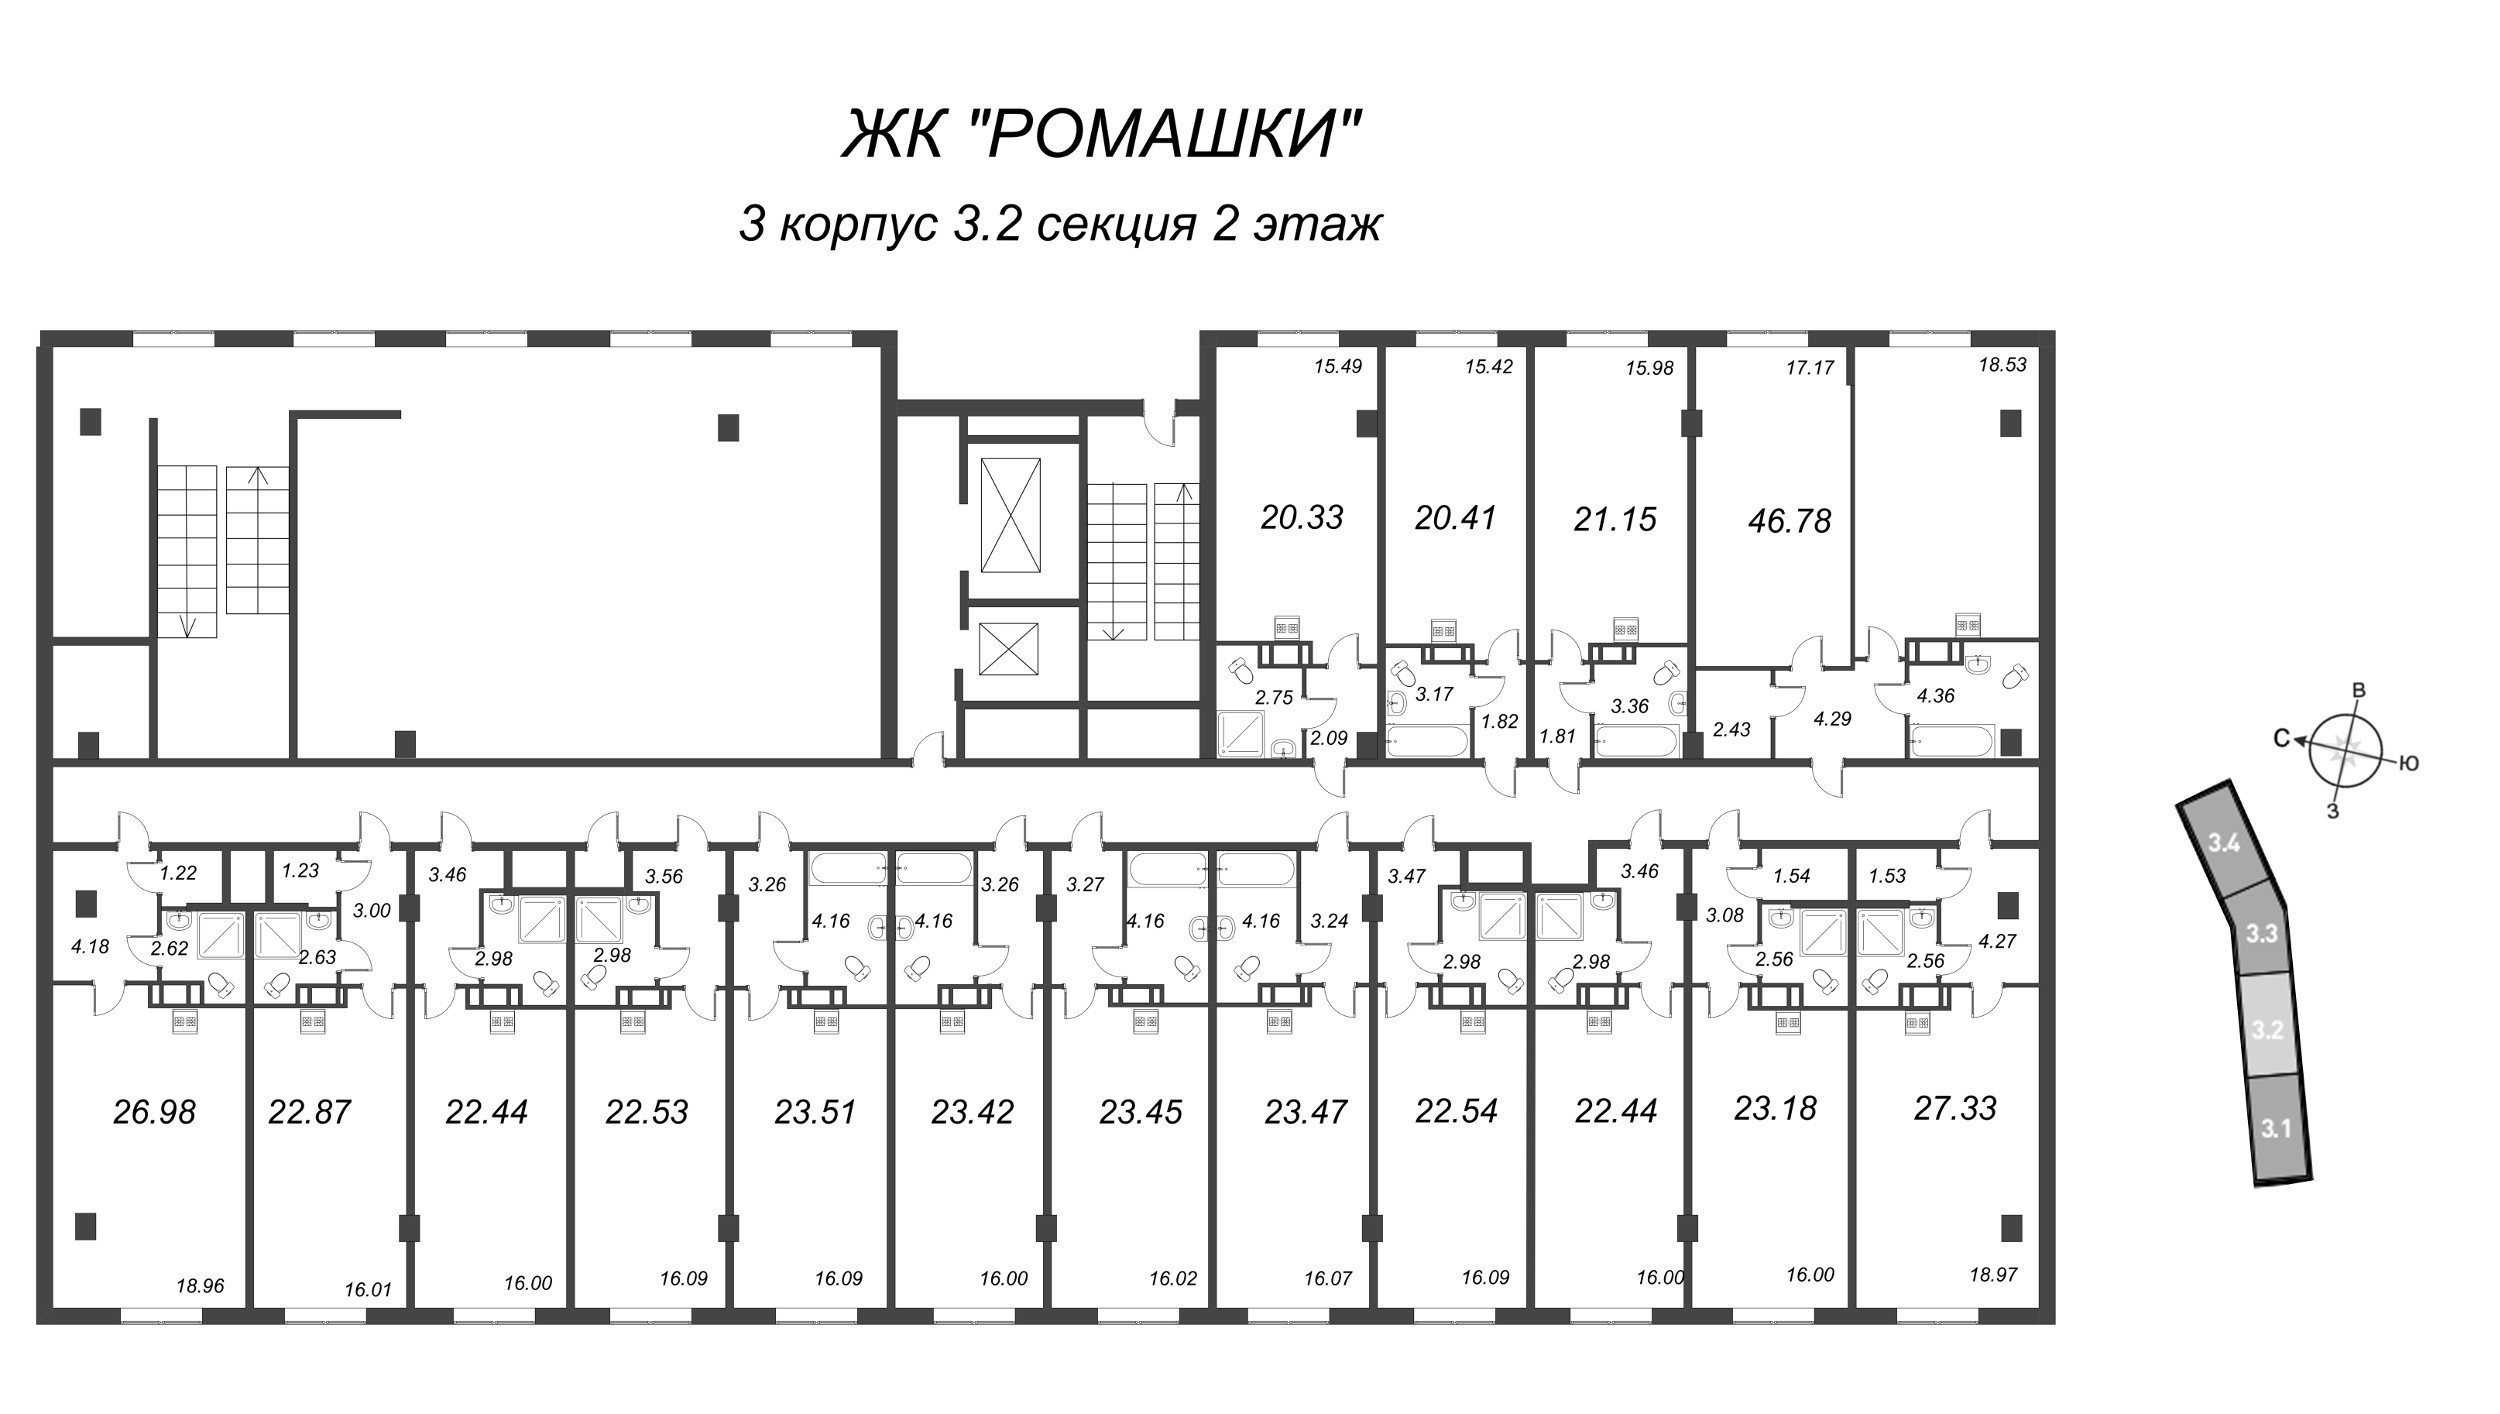 Квартира-студия, 27.33 м² в ЖК "Ромашки" - планировка этажа